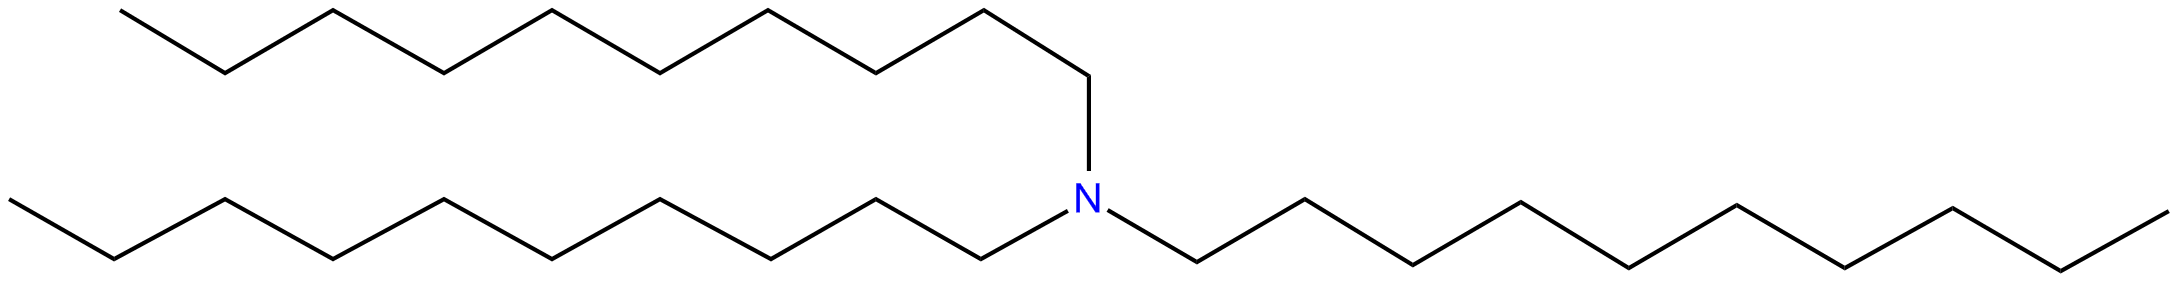 Image of N,N-didecyl-1-decanamine